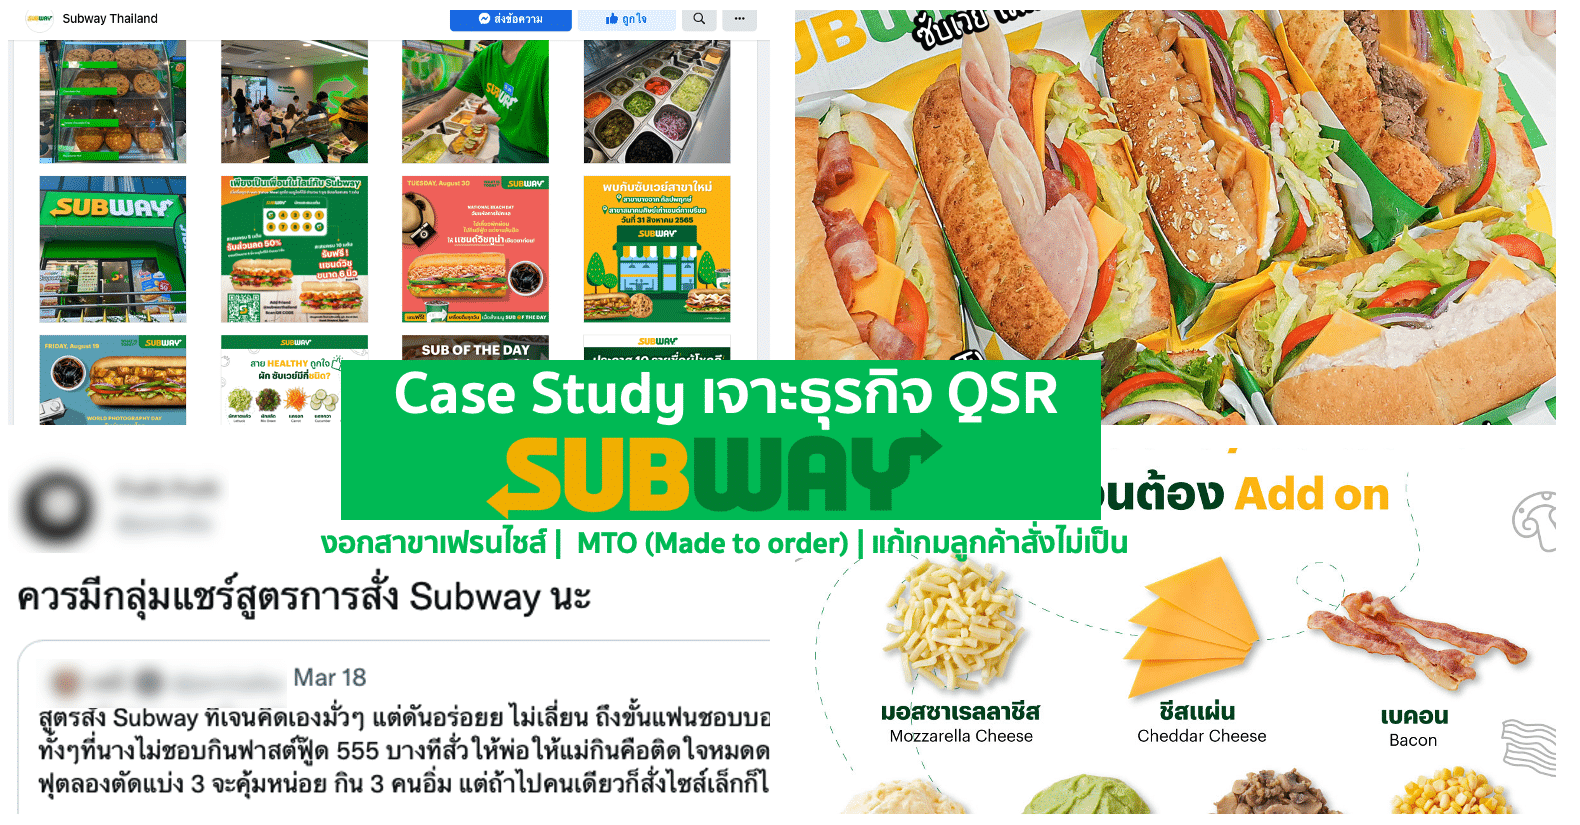 Case Study เจาะธุรกิจ QSR ‘Subway’ กับจุดเด่น MTO ลองครั้งนึงสั่งตลอดไป